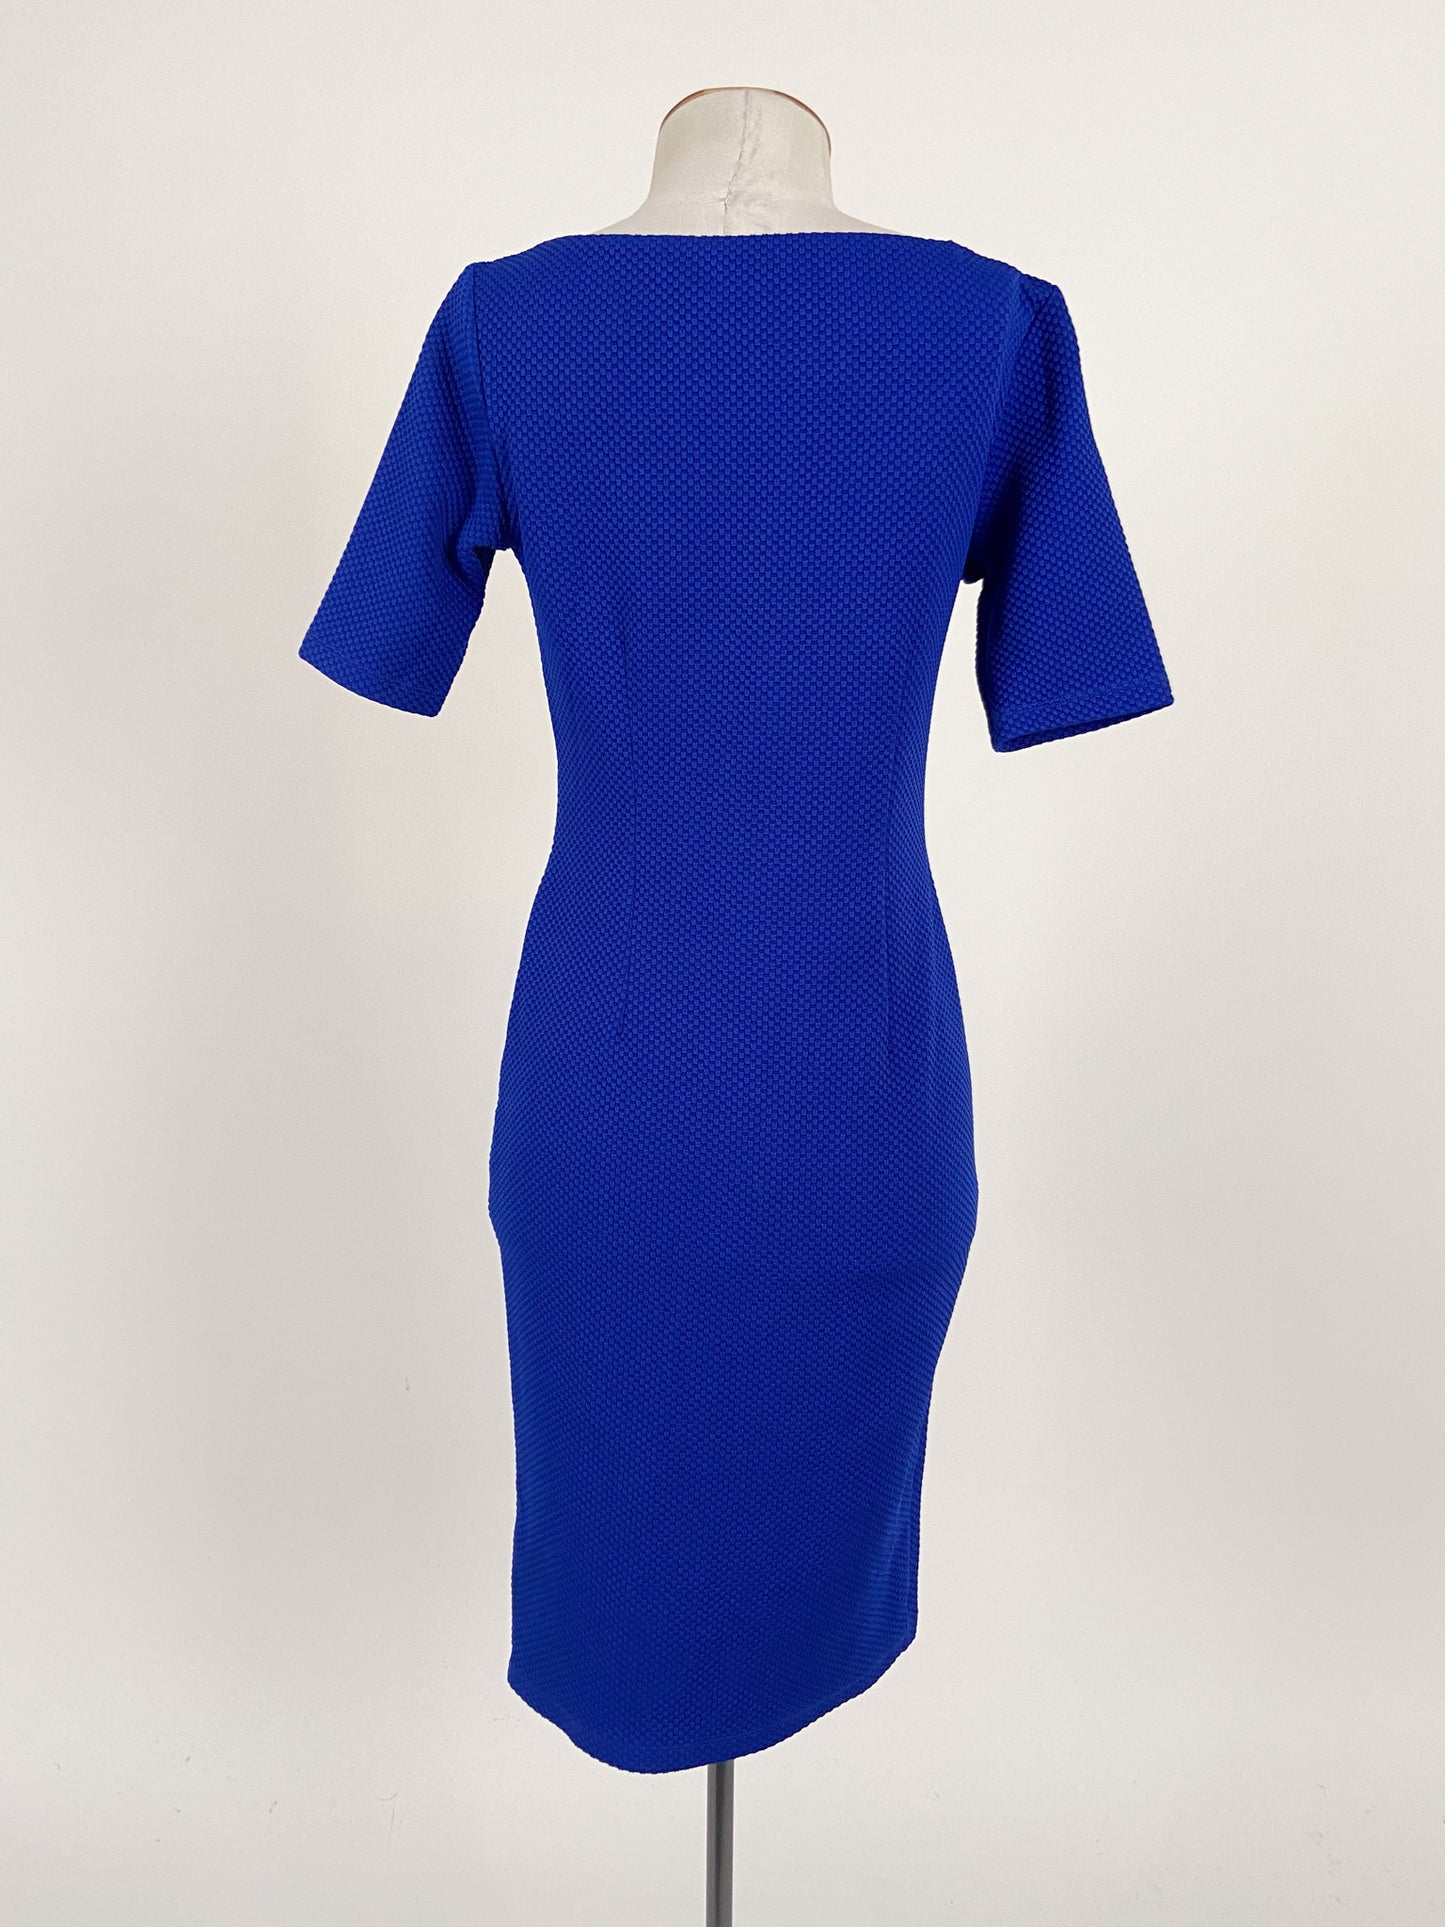 Marks & Spencer | Blue Formal/Workwear Dress | Size S